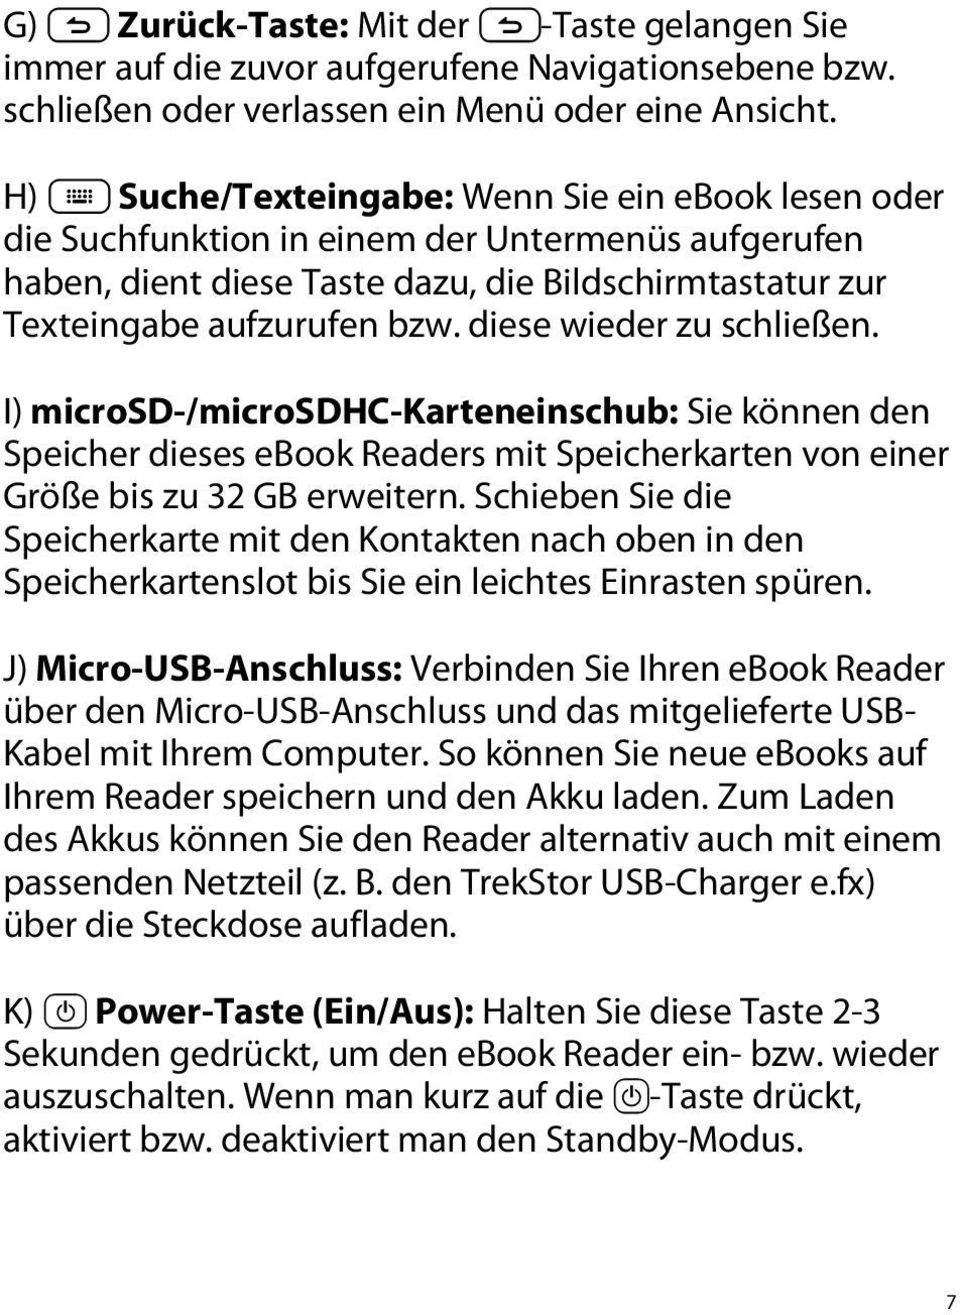 diese wieder zu schließen. I) microsd-/microsdhc-karteneinschub: Sie können den Speicher dieses ebook Readers mit Speicherkarten von einer Größe bis zu 32 GB erweitern.